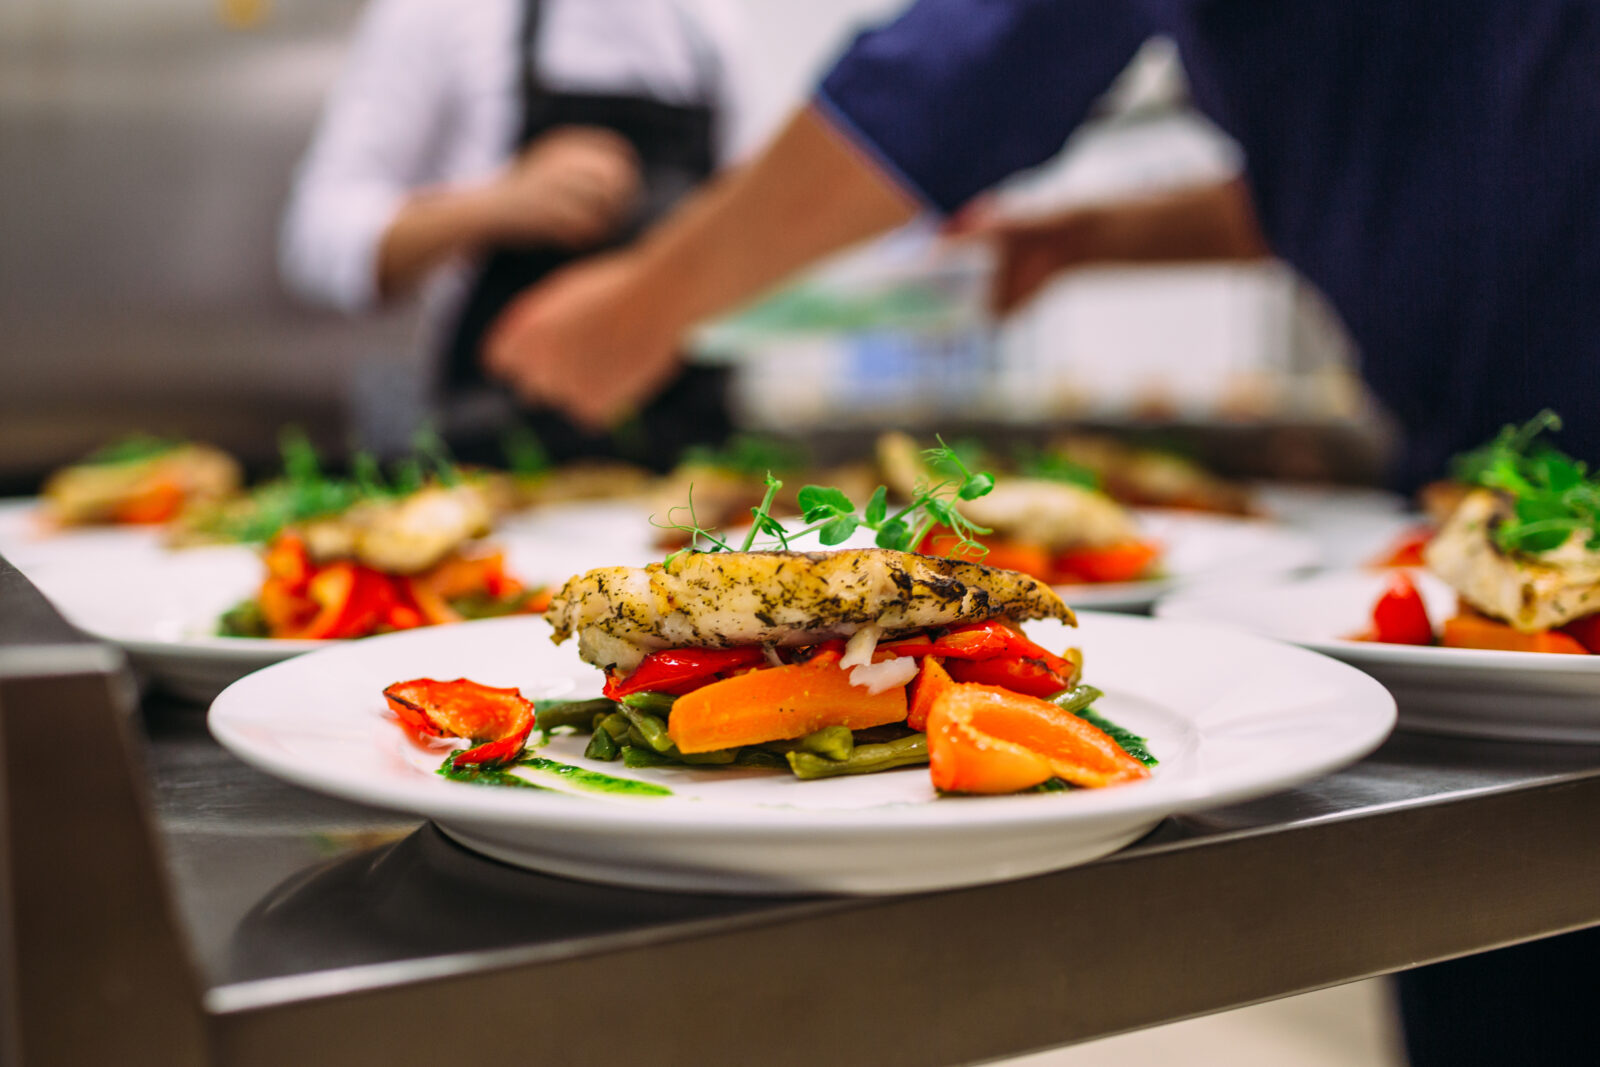 Piatto di pollo con verdure su un pass della cucina di un ristorante con cuochi sullo sfondo, utilizzata per la campagna bis contro gli sprechi alimentari, firmata da ett